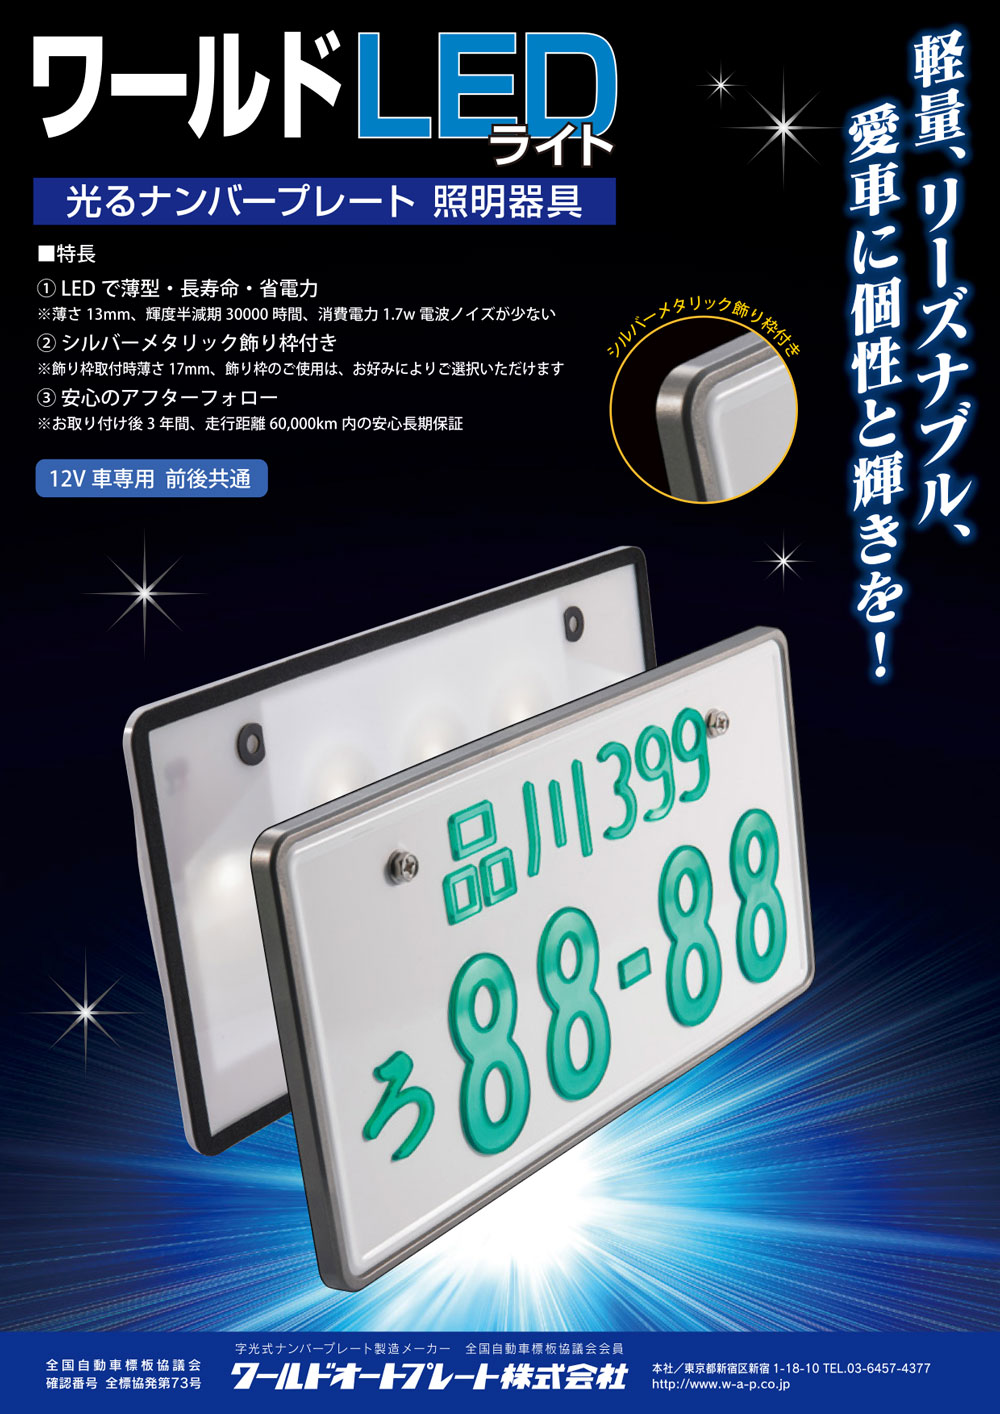 16896円 高級感 AIR LED 字光式 ナンバープレート 2枚セット プレジデント PGF50 送料無料 3年保証